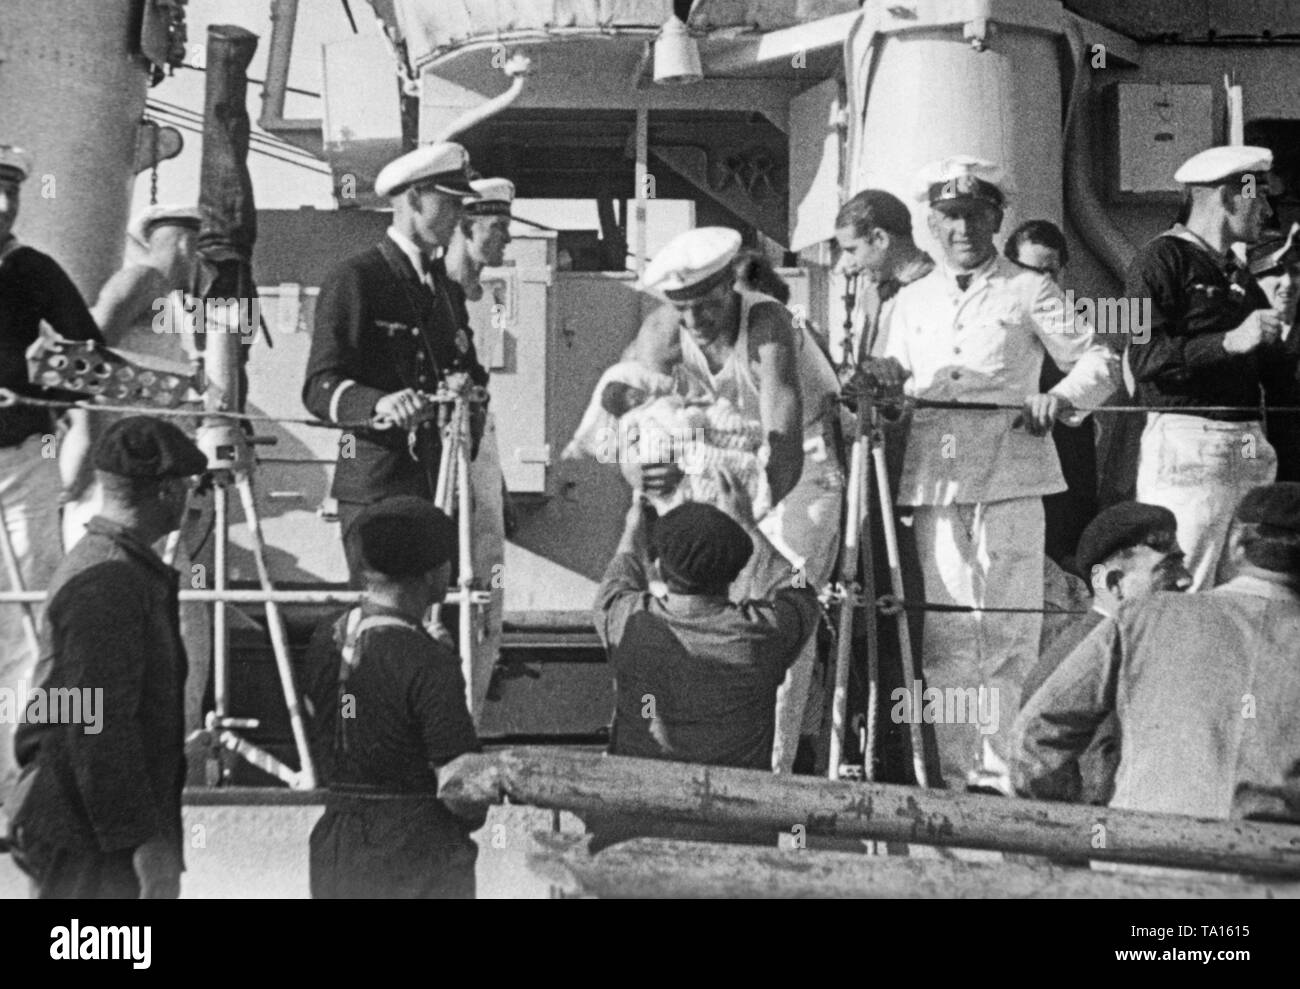 Die deutschen Zerstörer "Jaguar" und "Wolf" spanische Flüchtlinge in den Hafen von St. Jean de Luz, Französisches Baskenland, Frankreich, während des Spanischen Bürgerkrieges am 18. September 1936. Auf dem Foto ist ein Deutscher Seemann, der Übergabe ein Baby aus dem Deck ist. Deutsche marineoffiziere stehen rund um den Mann mit dem Baby. Stockfoto